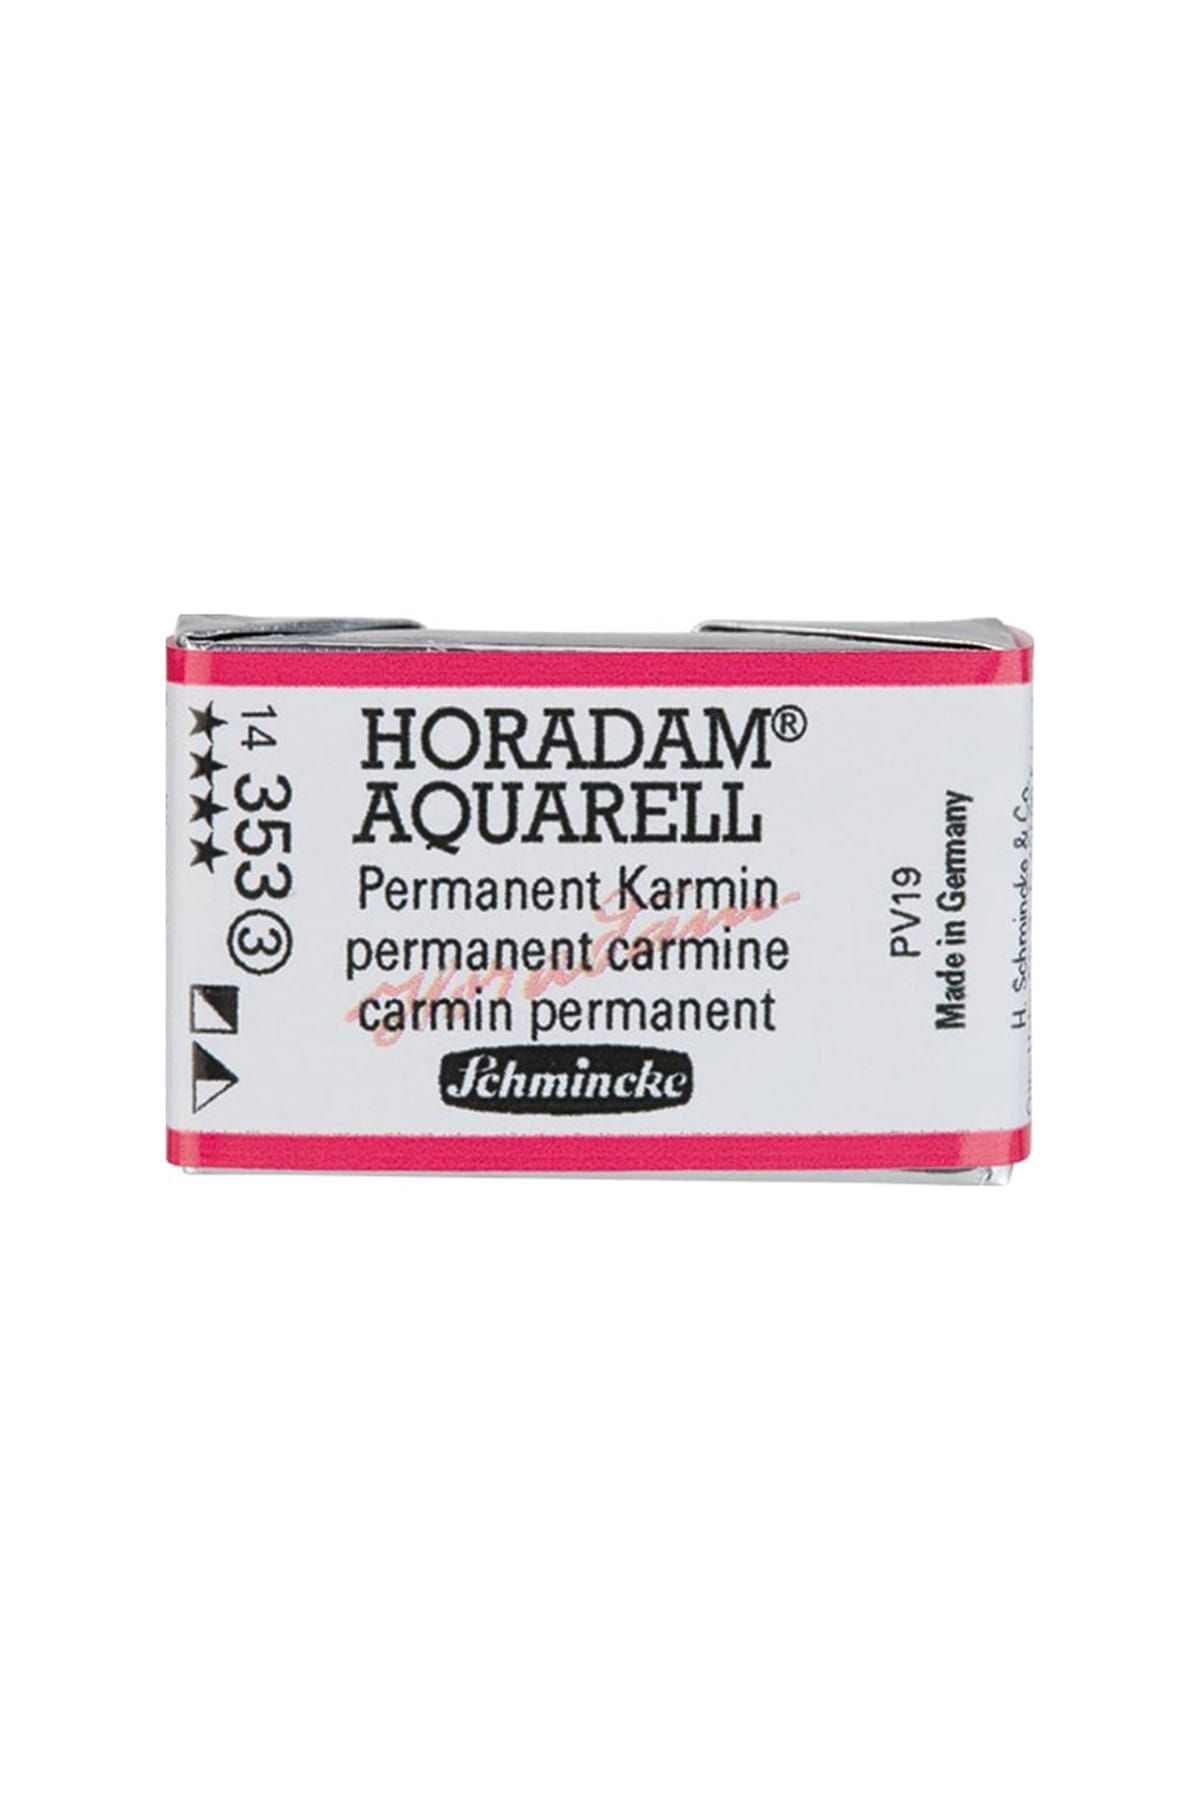 Schmincke Horadam Aquarell 1/1 Tablet 353 Permanent Carmine S3